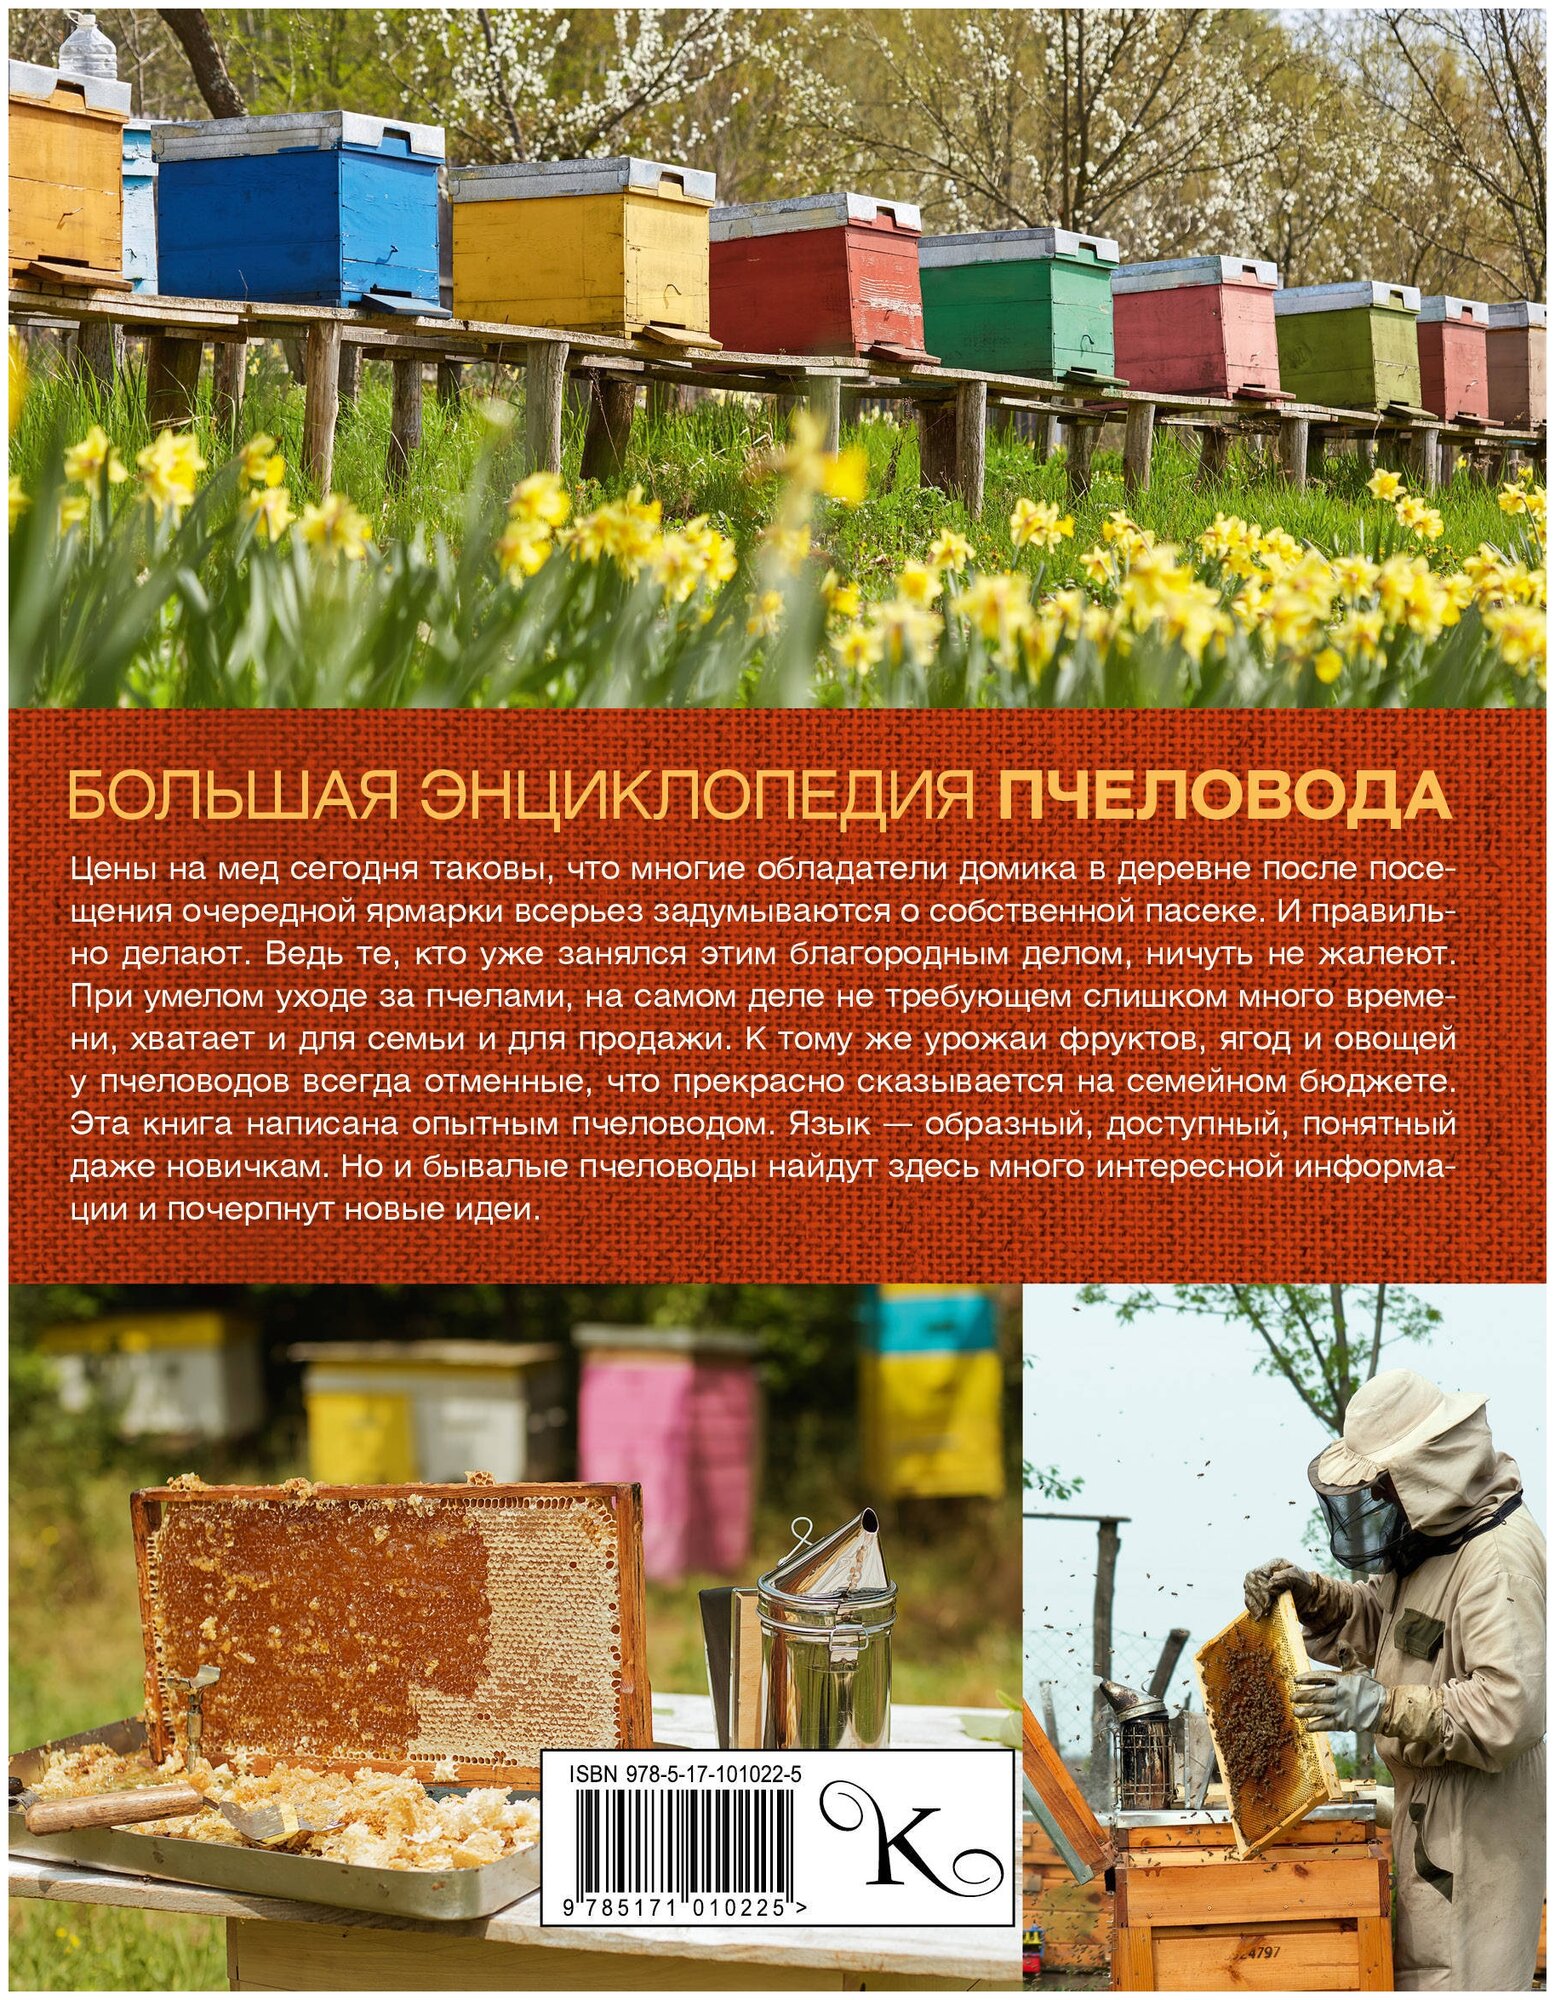 Большая энциклопедия пчеловода - фото №3